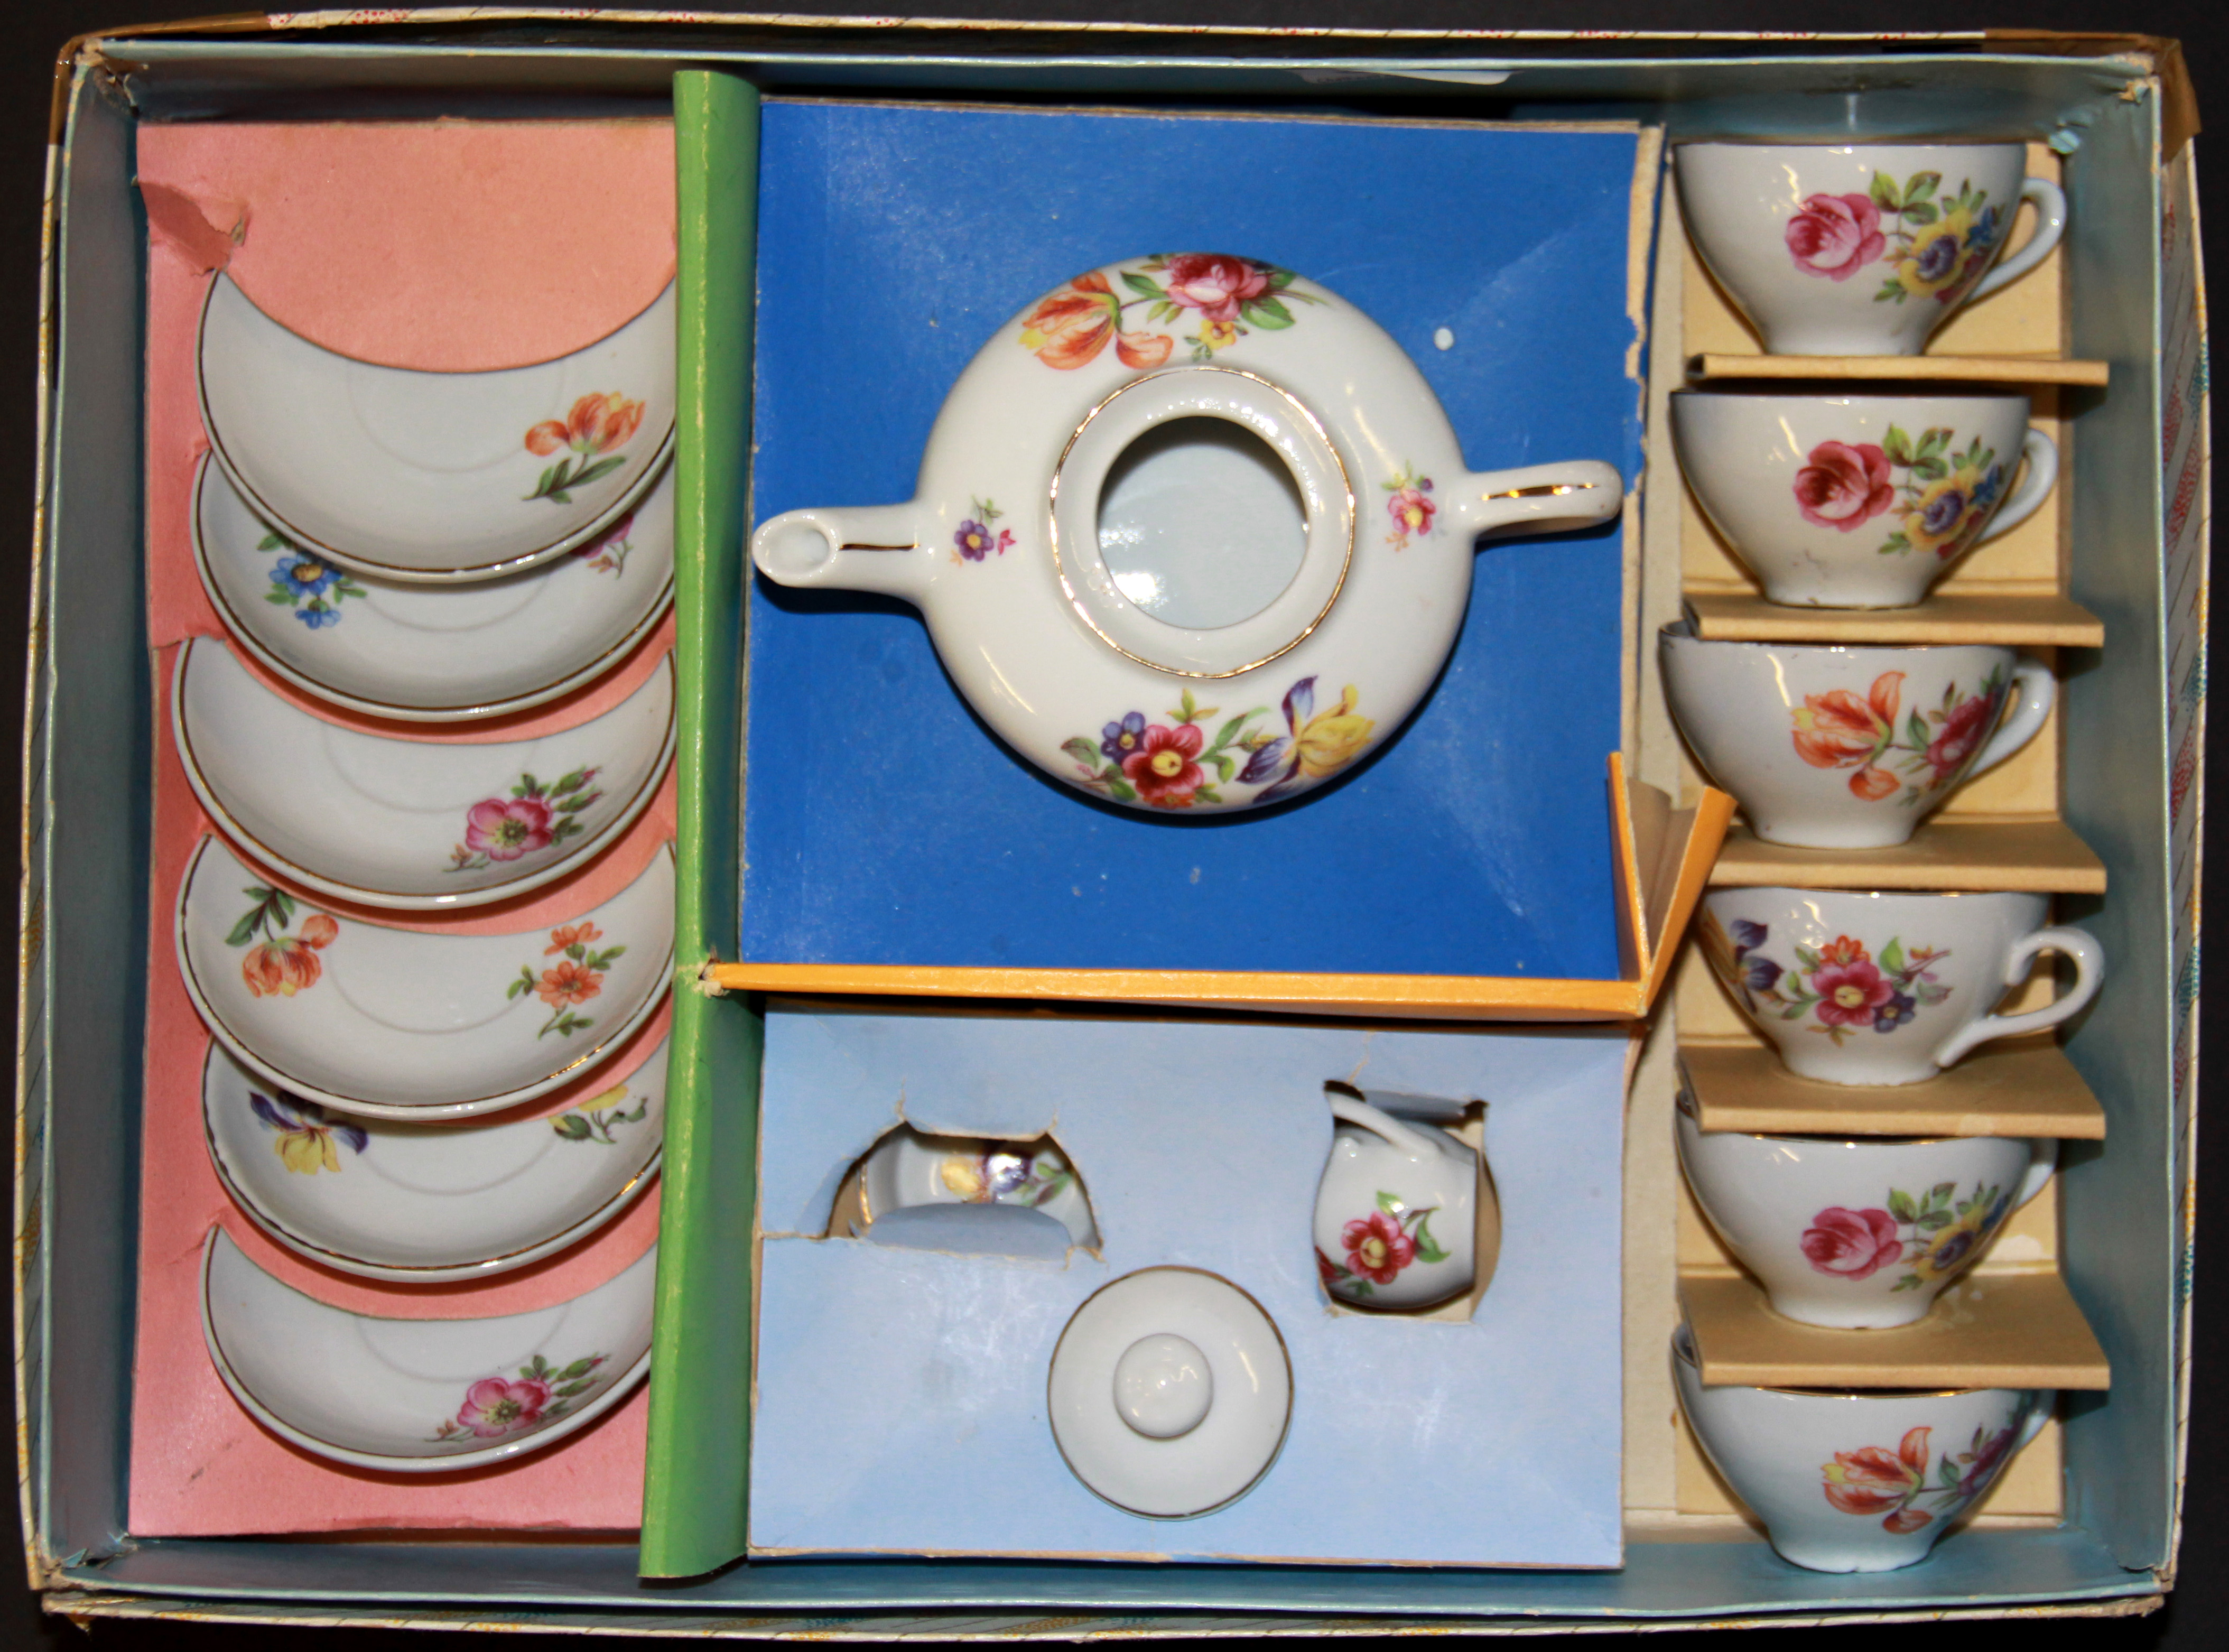 A 1960's child's porcelain tea set.